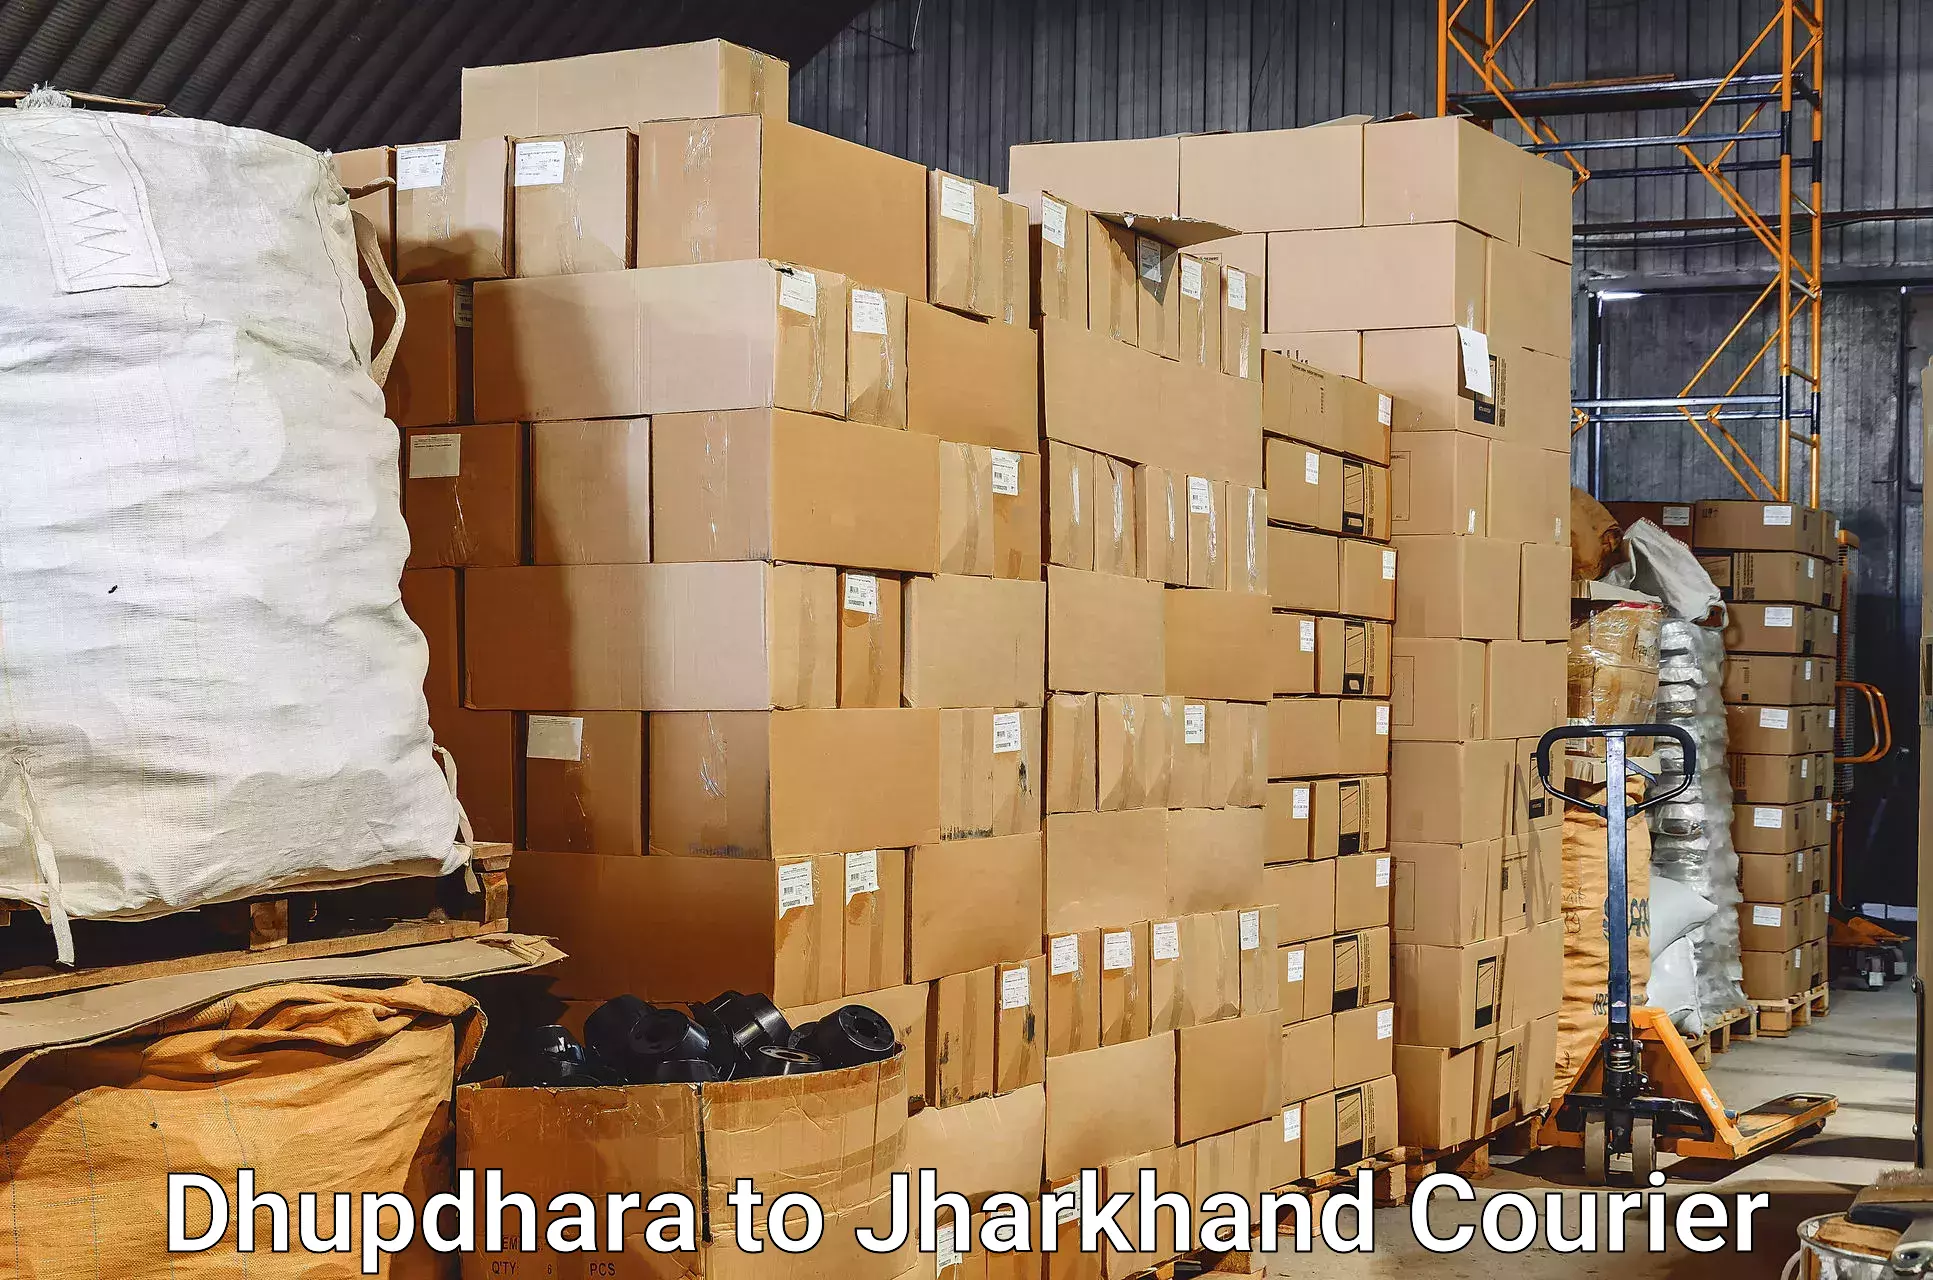 Baggage shipping experience Dhupdhara to Chatra